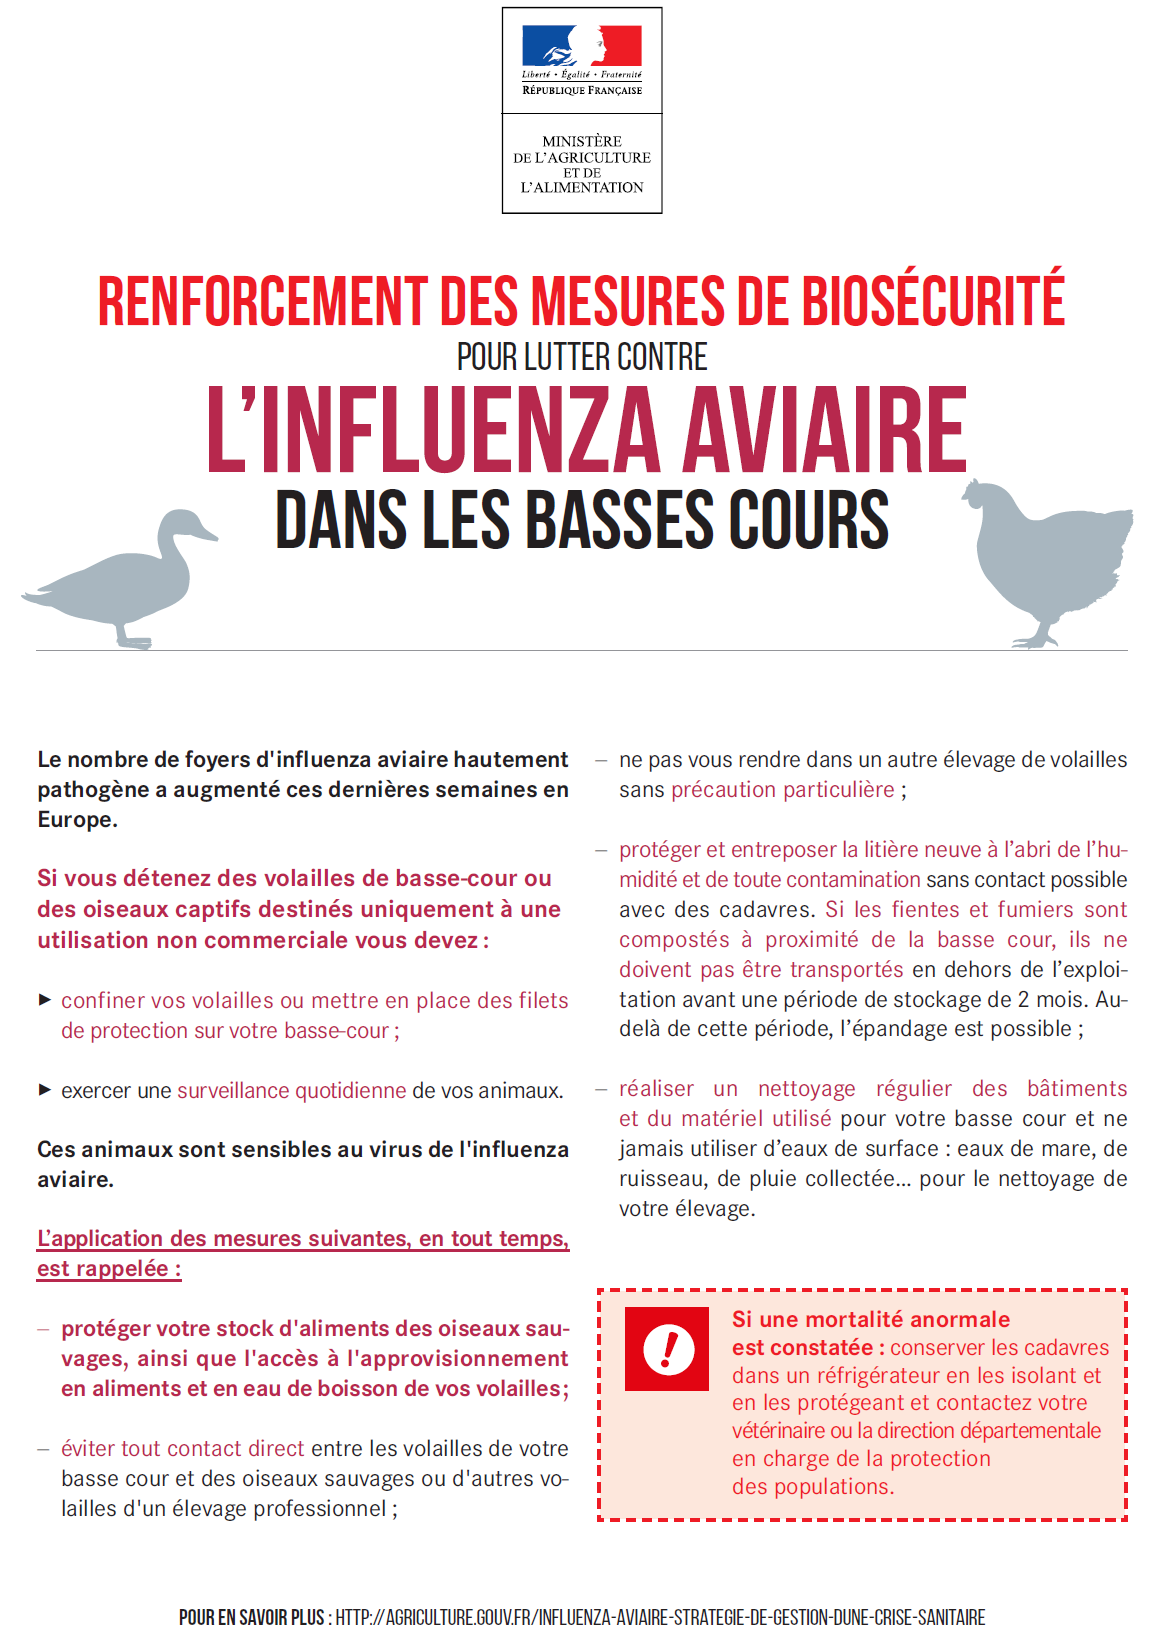 Élévation du niveau de risque en matière d’influenza aviaire hautement pathogène